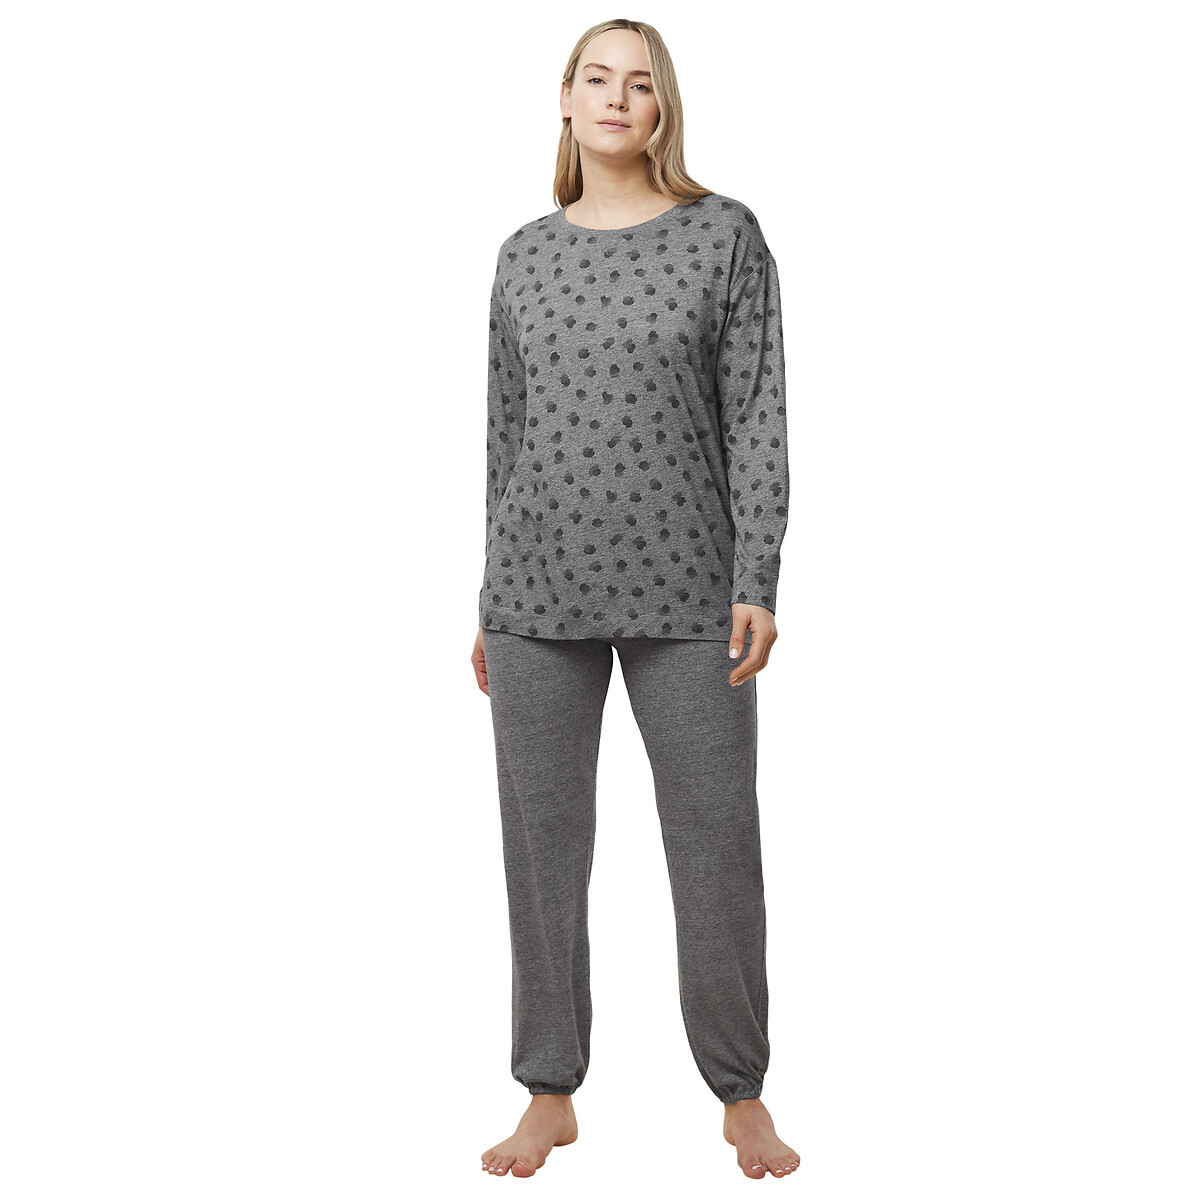 Пижама из хлопка и лиоцелла Endless Comfort  48 (FR) - 54 (RUS) серый